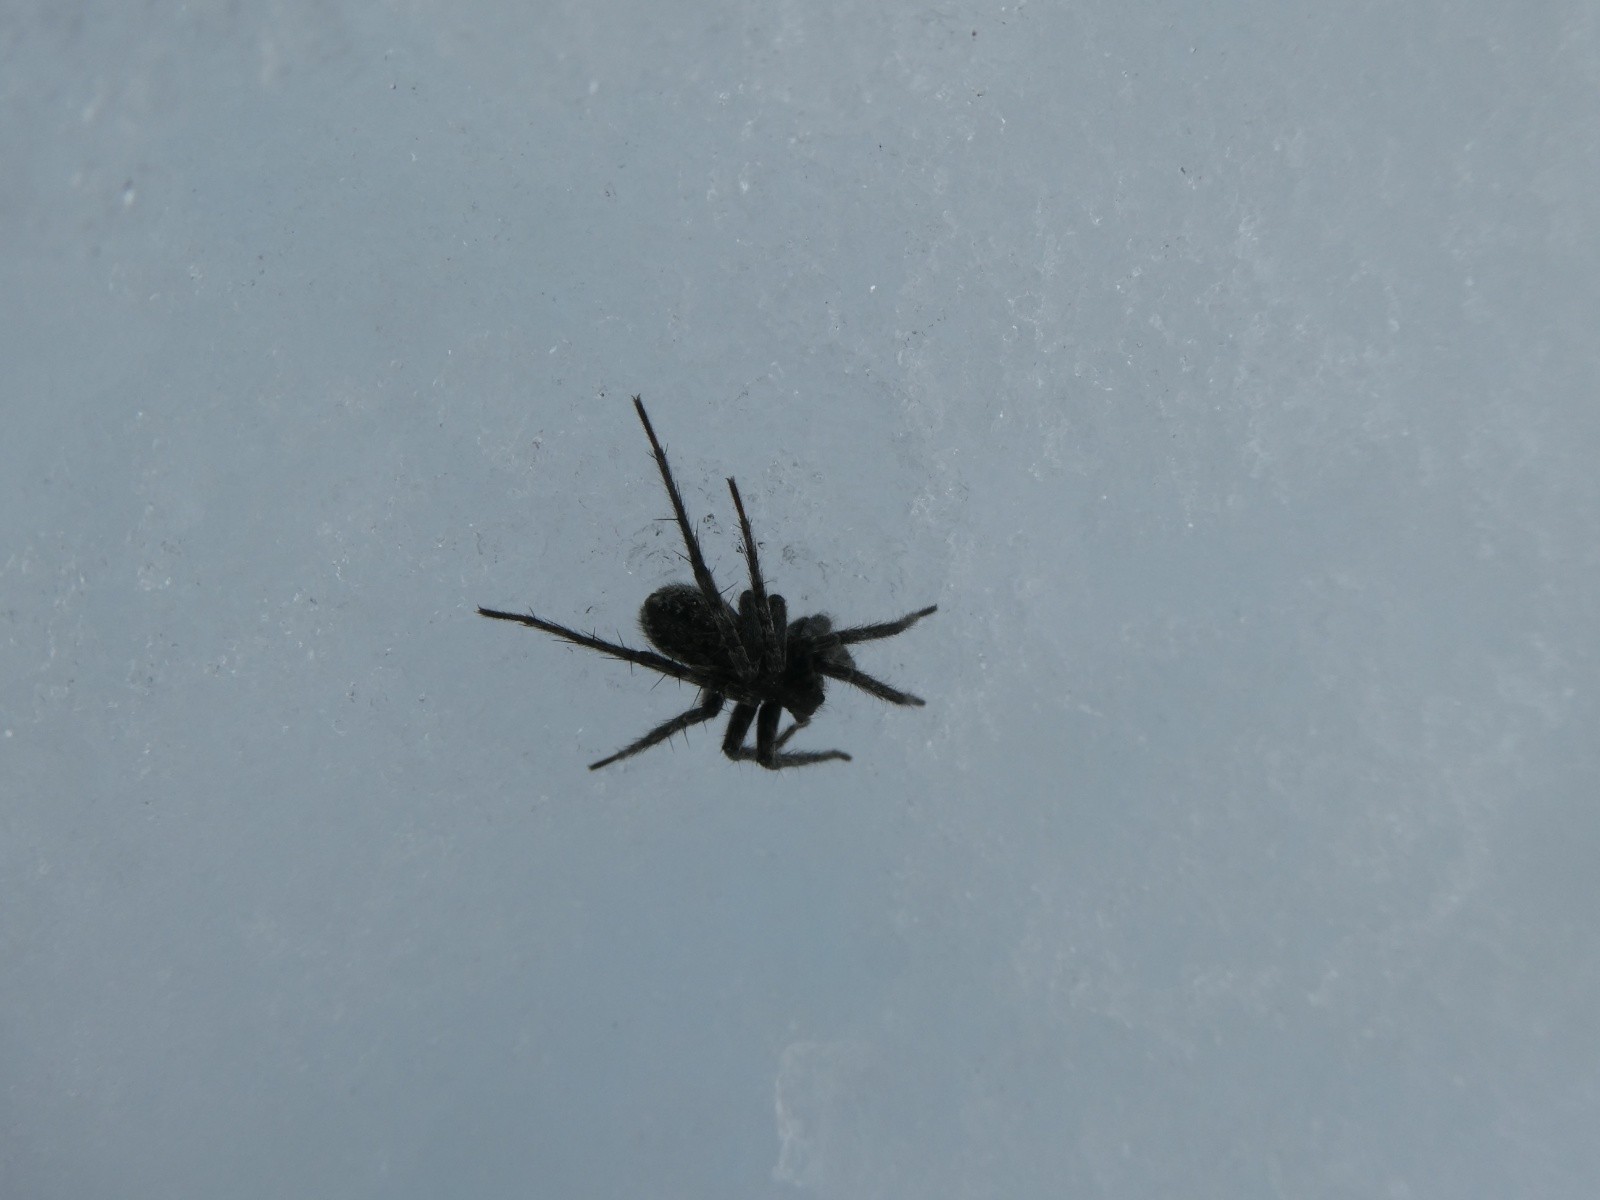  Pas mal d'araignées sur le glacier